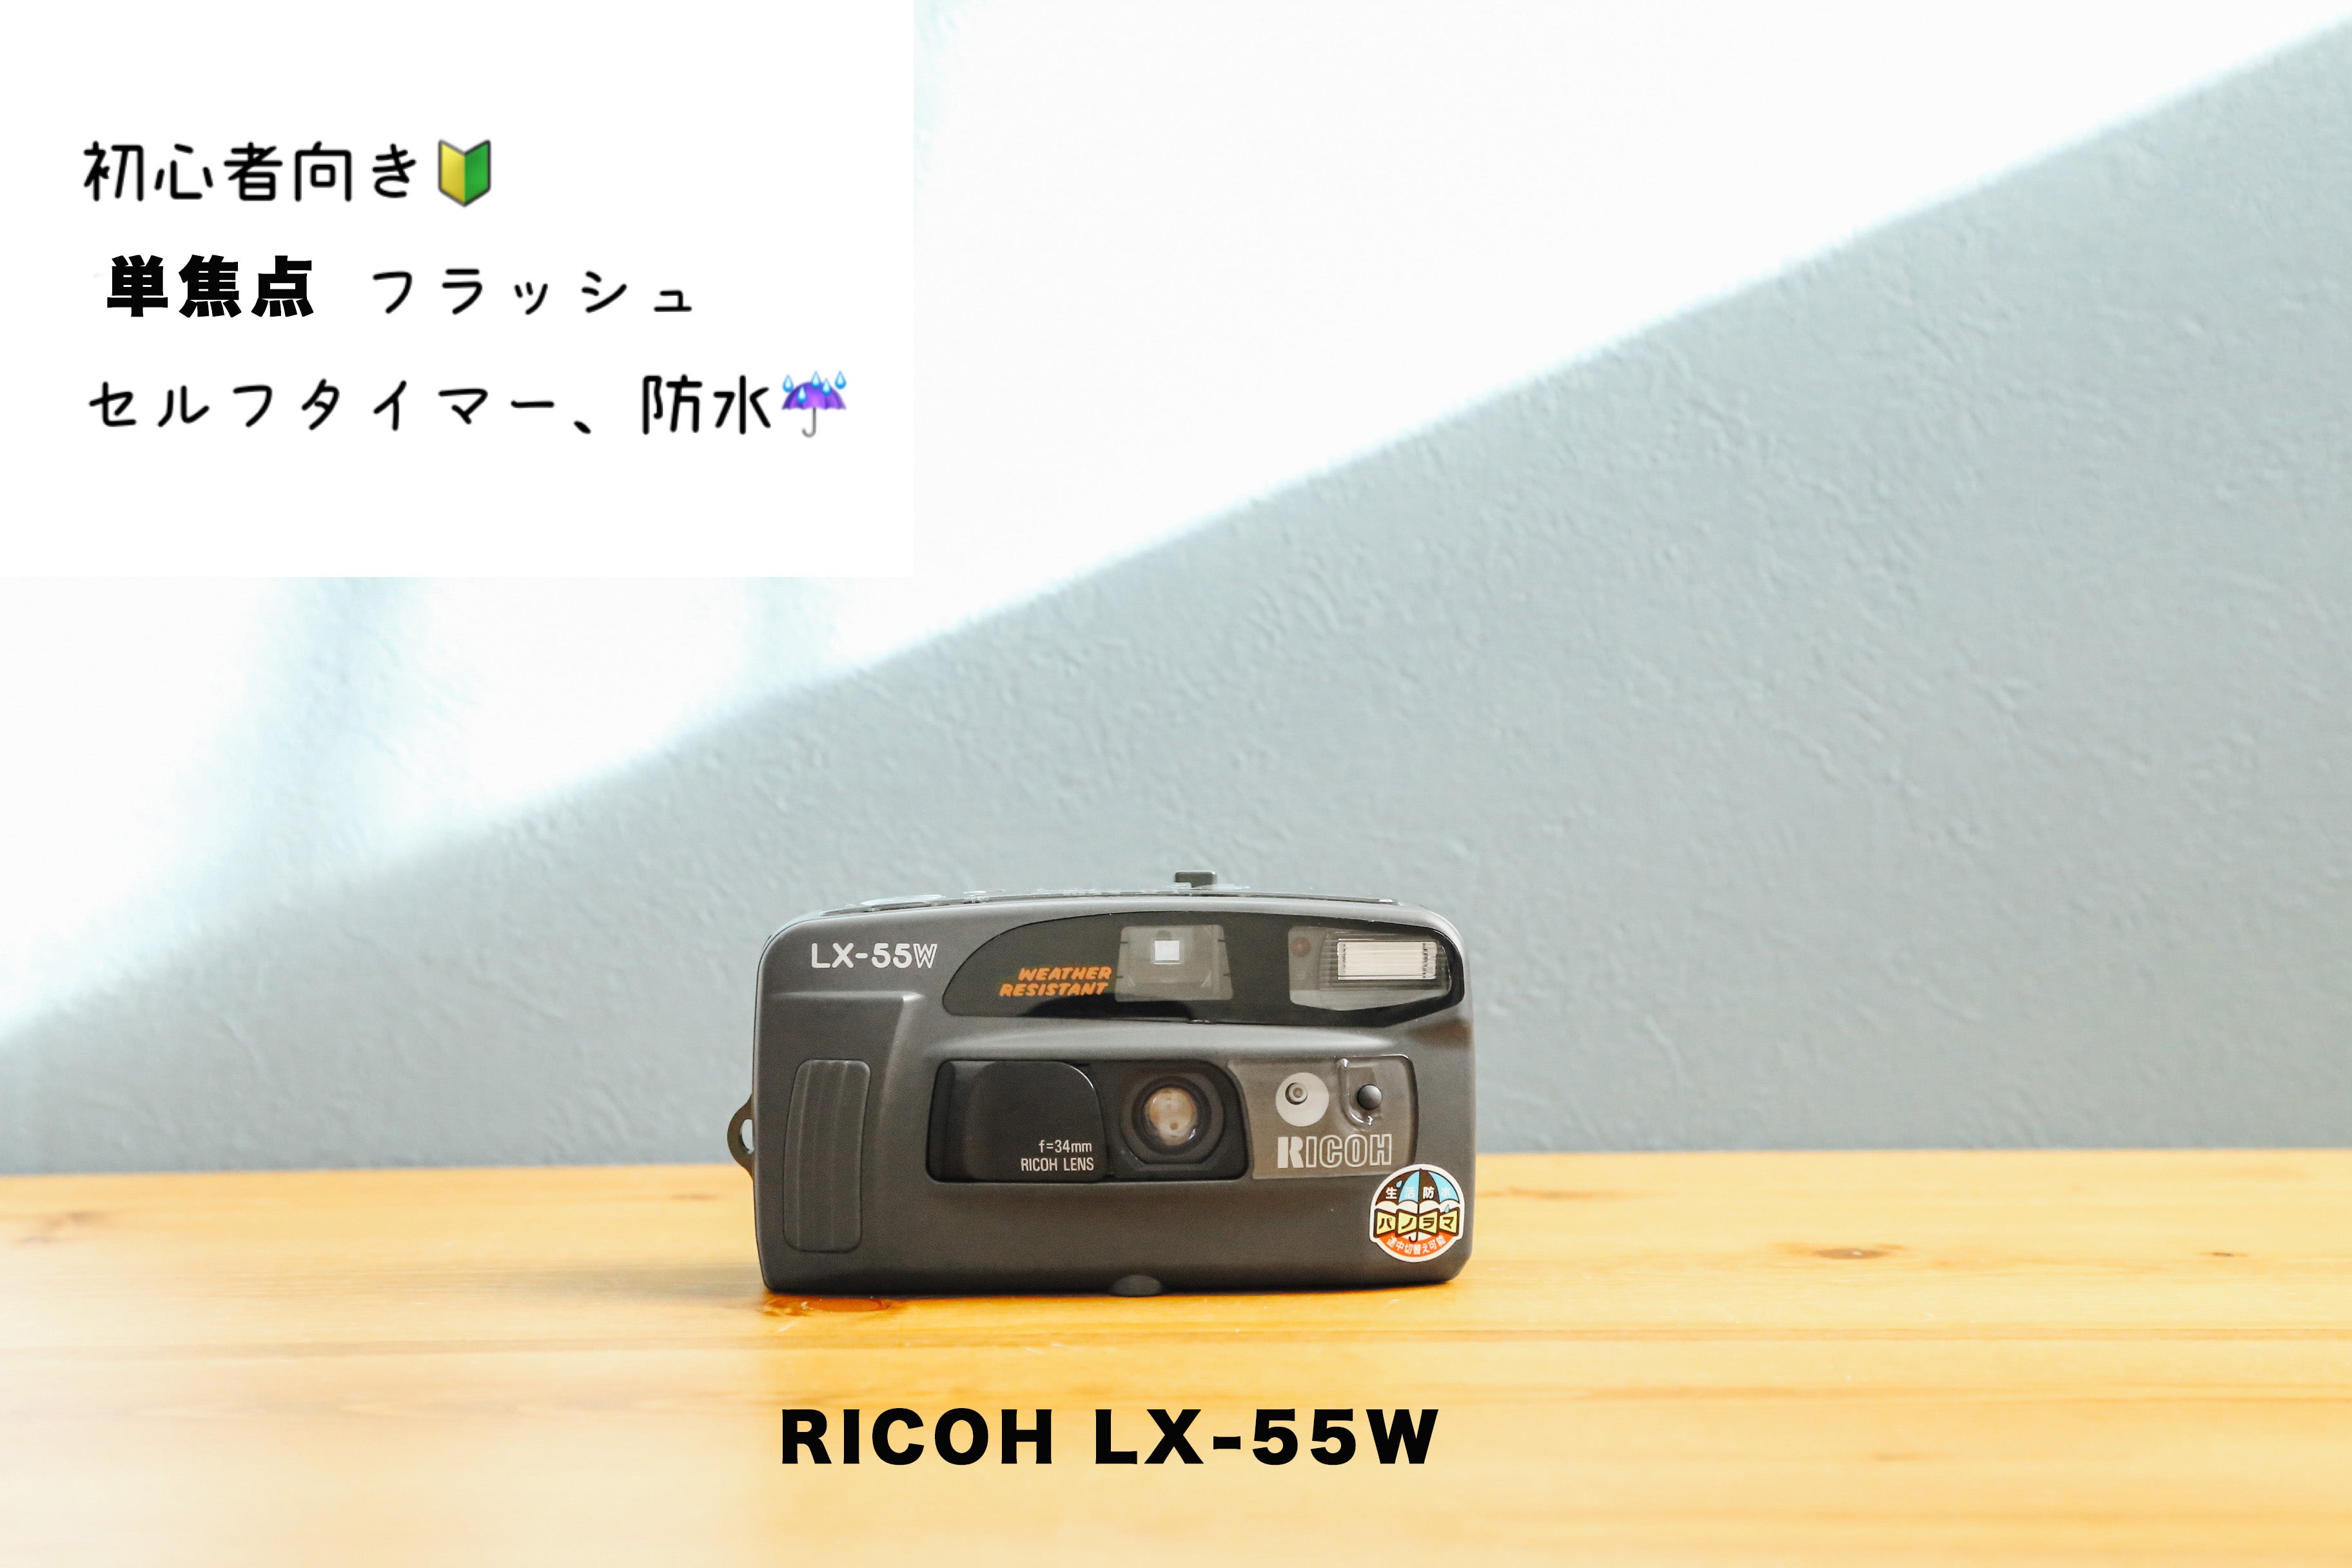 日本正規代理店品 美品 動作良好 RICOH LX-55W 単3電池付き 生活防水